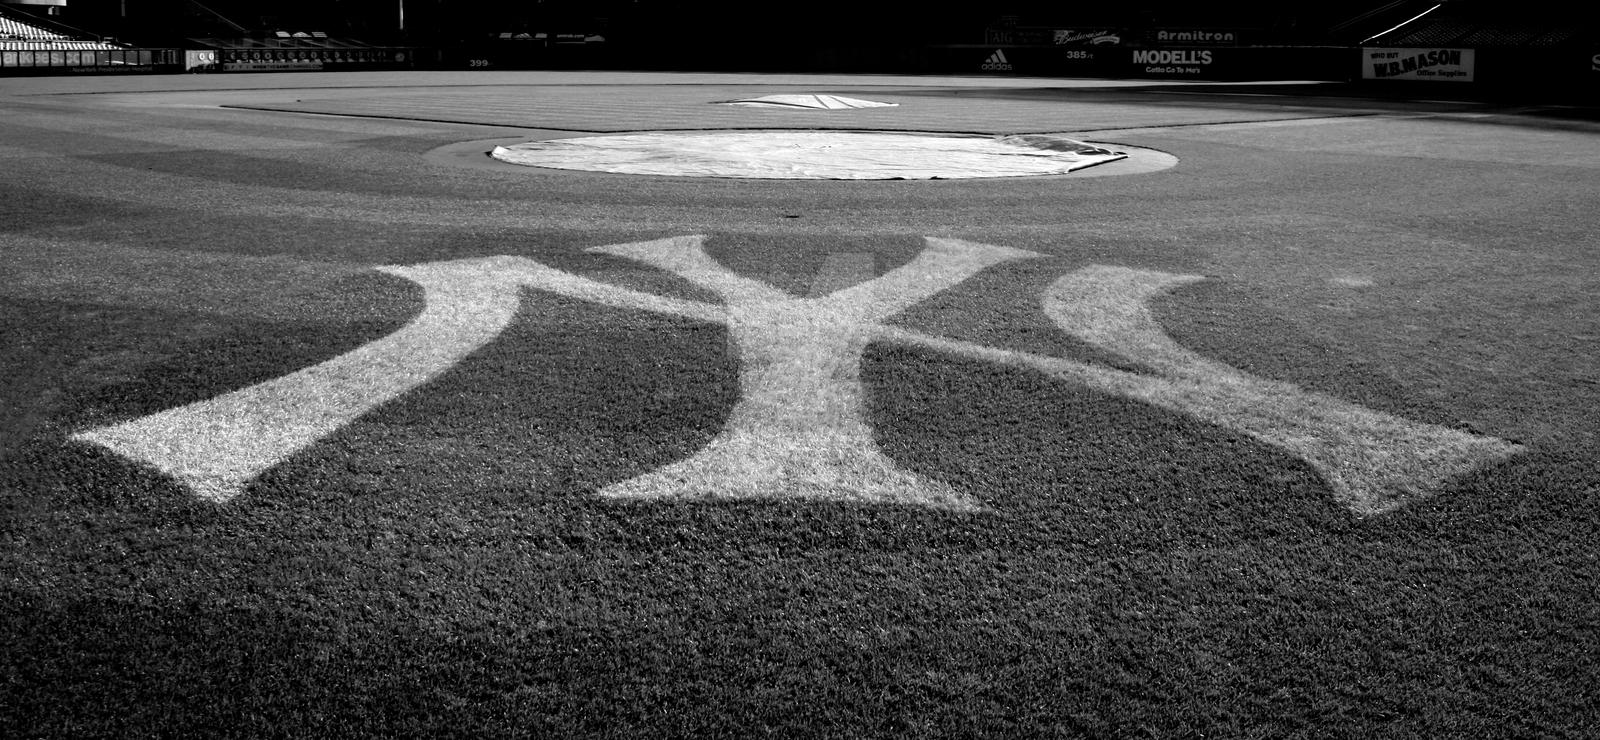 Yankees Symbols